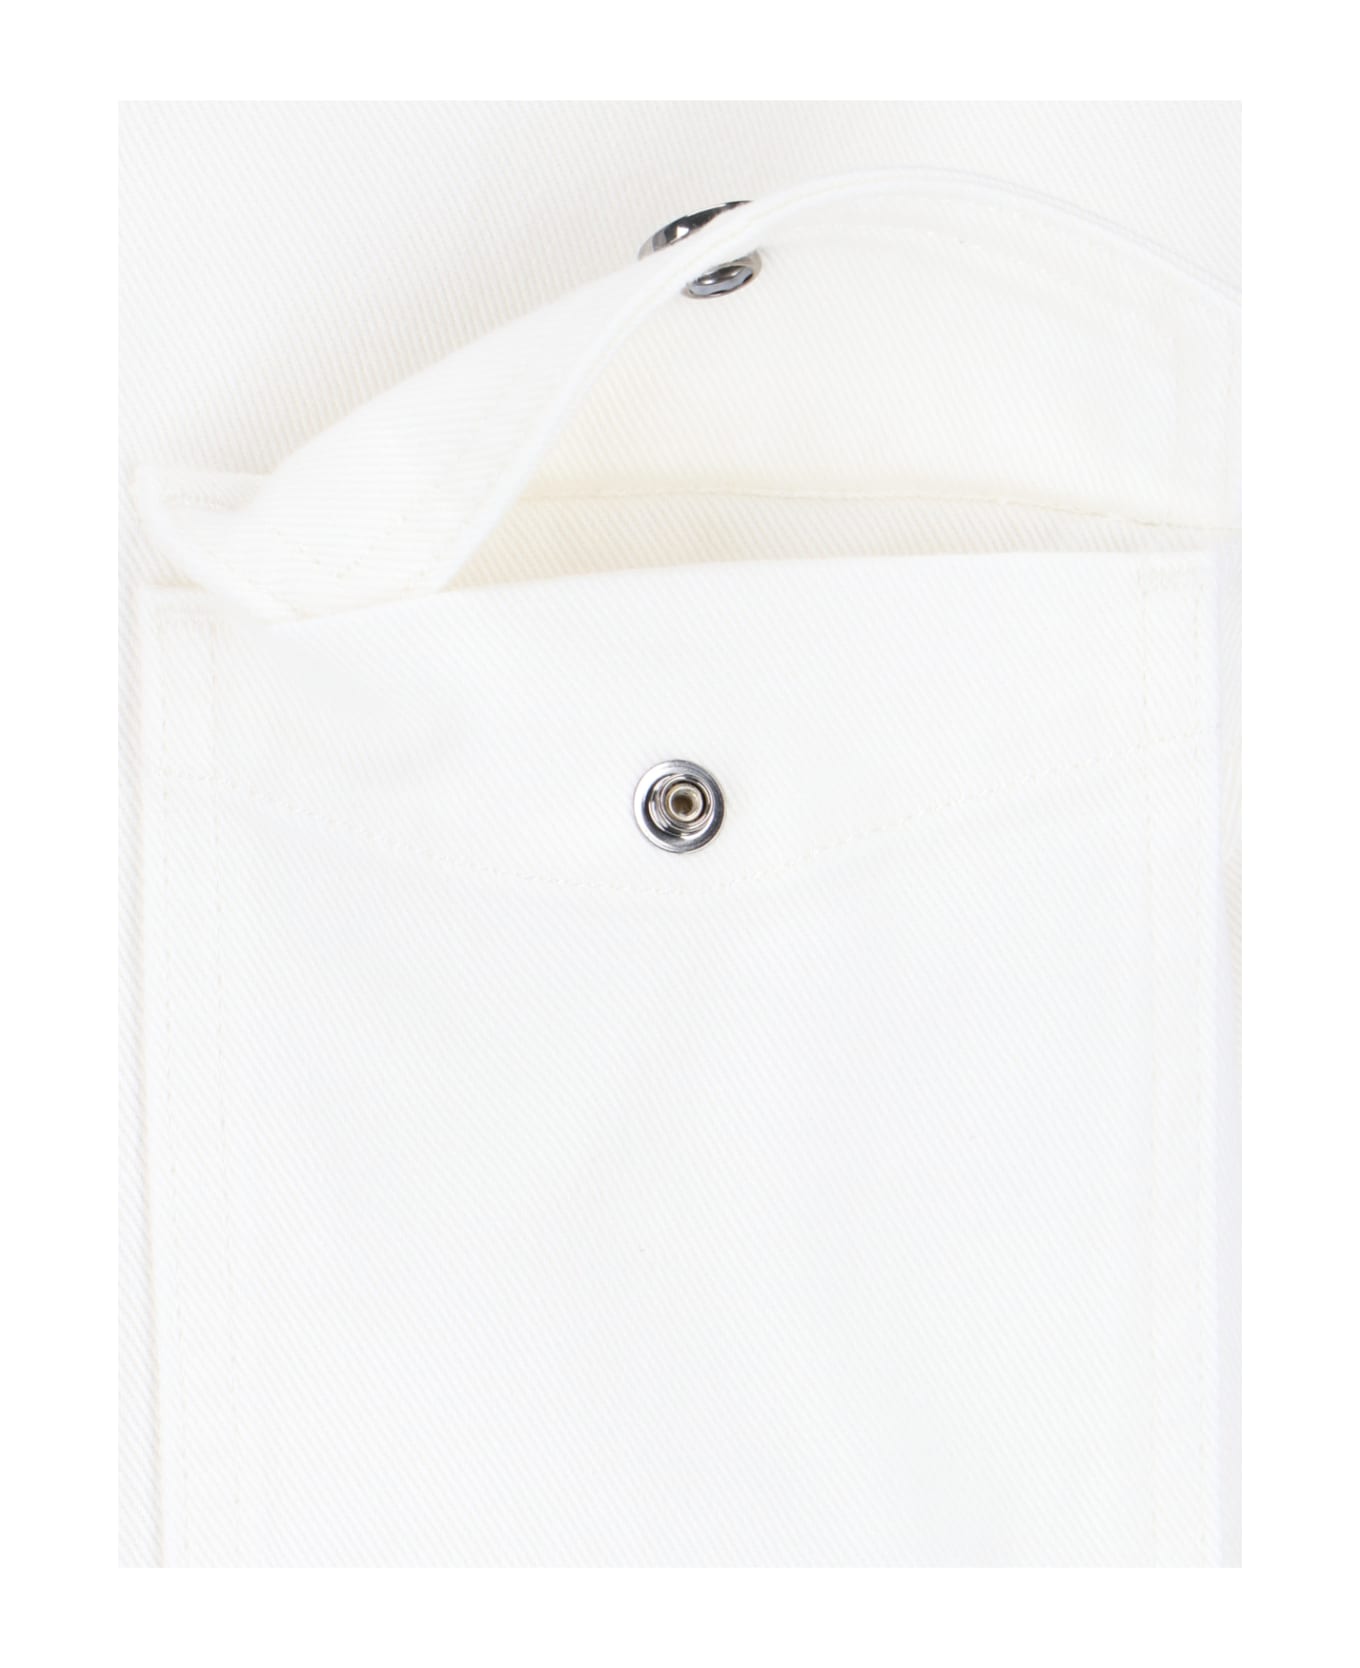 Versace Denim Shirt - White